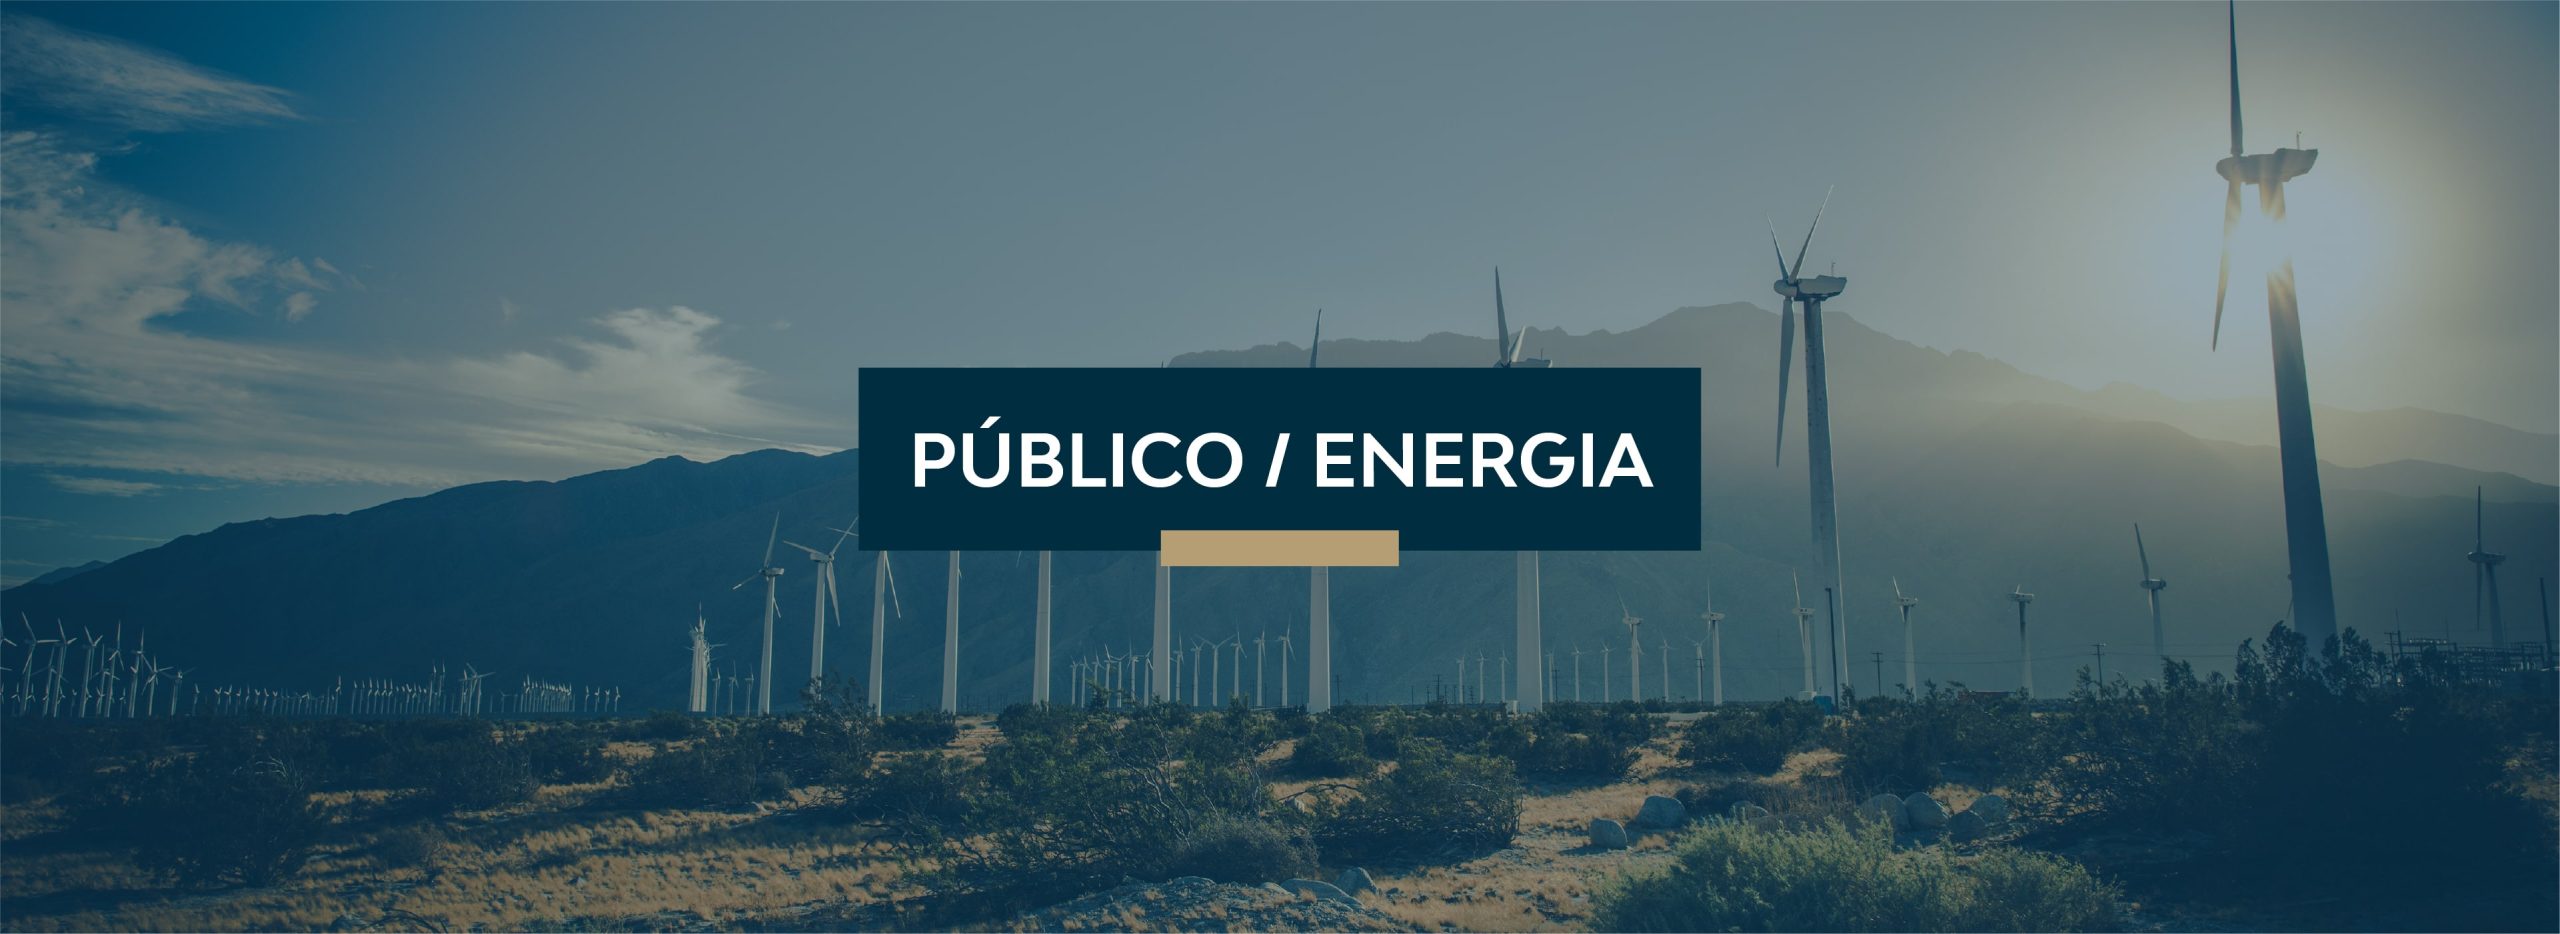 Público / Energia